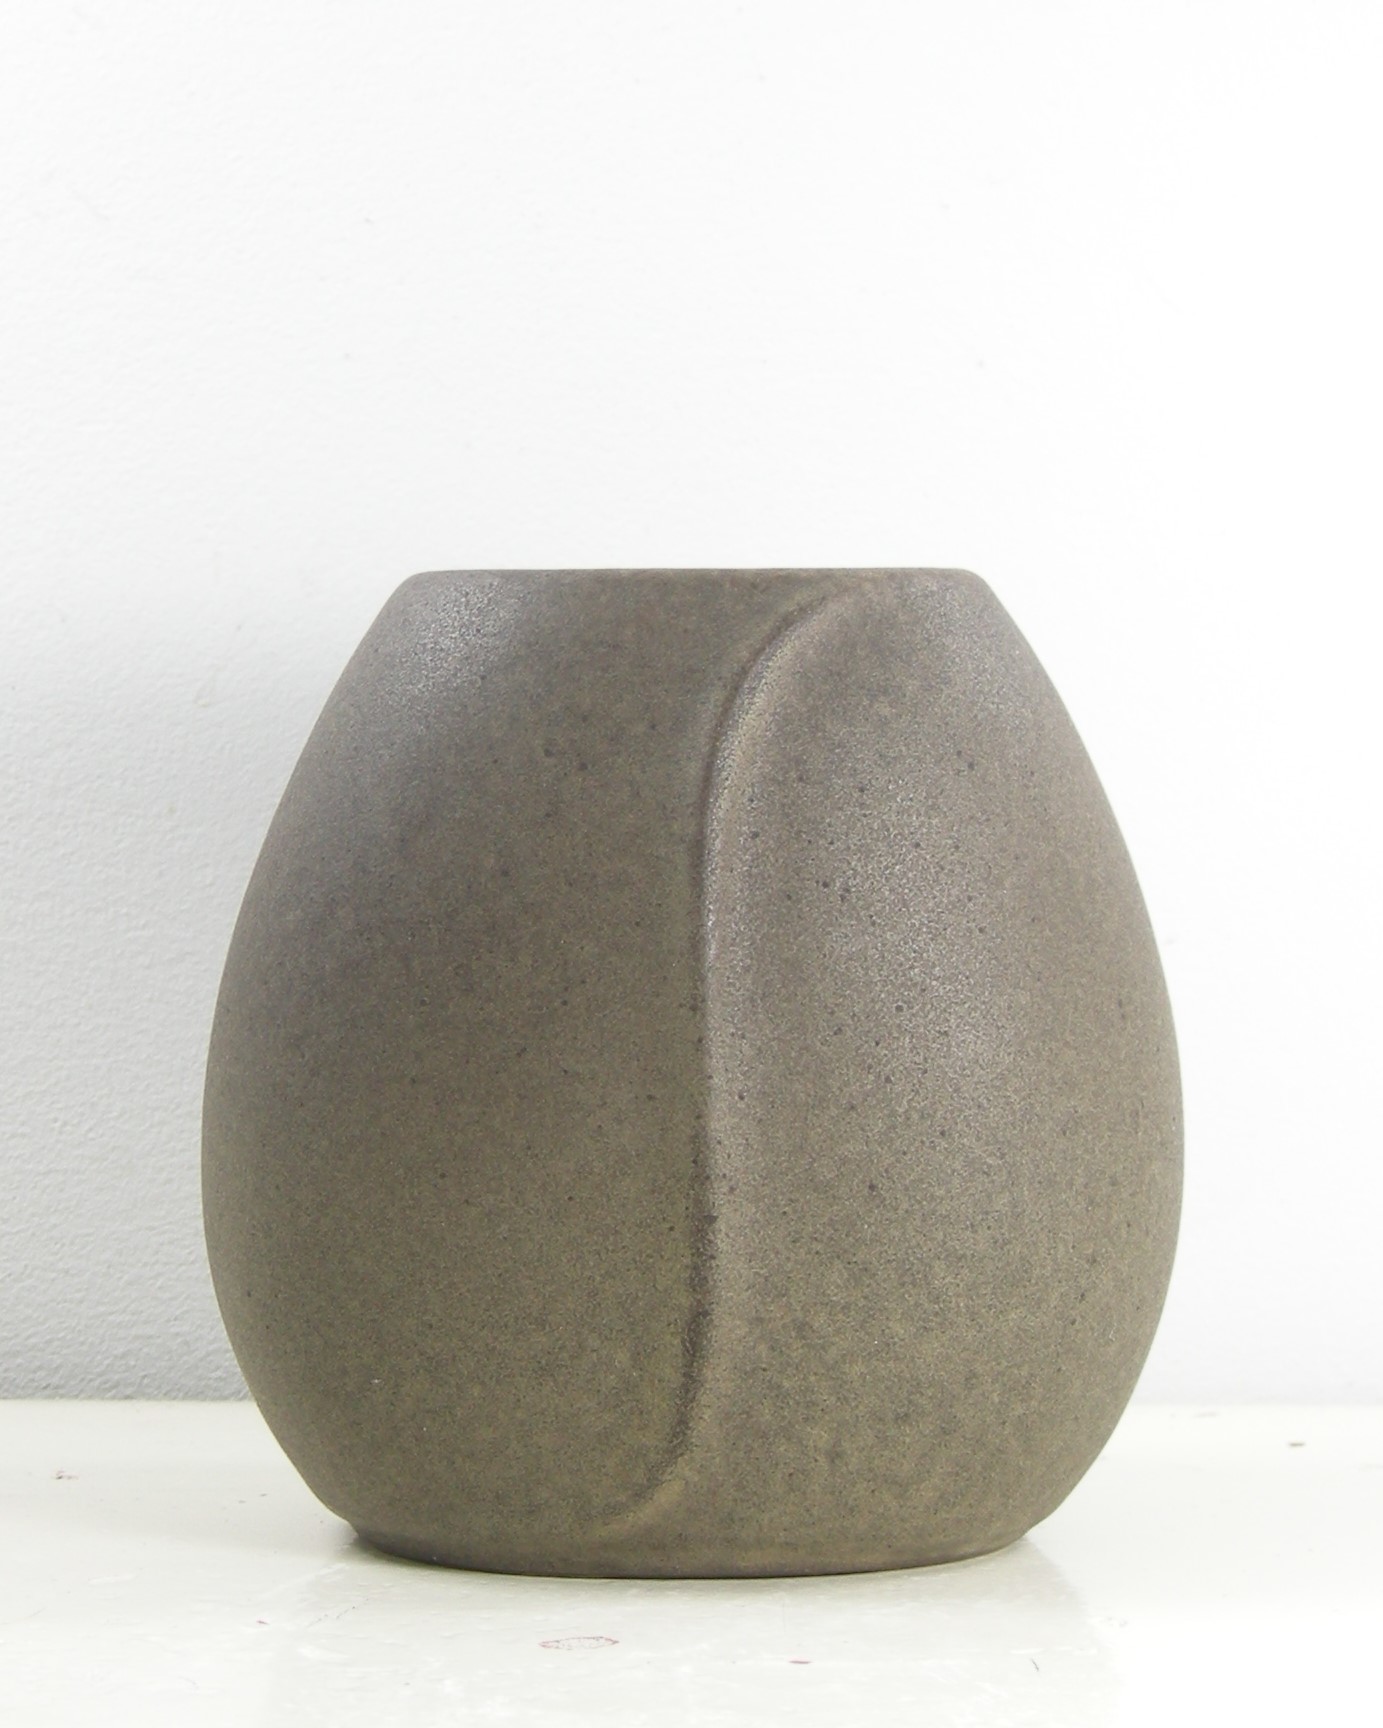 316-vaasje West Germany Steuler keramik 60/10 bruin